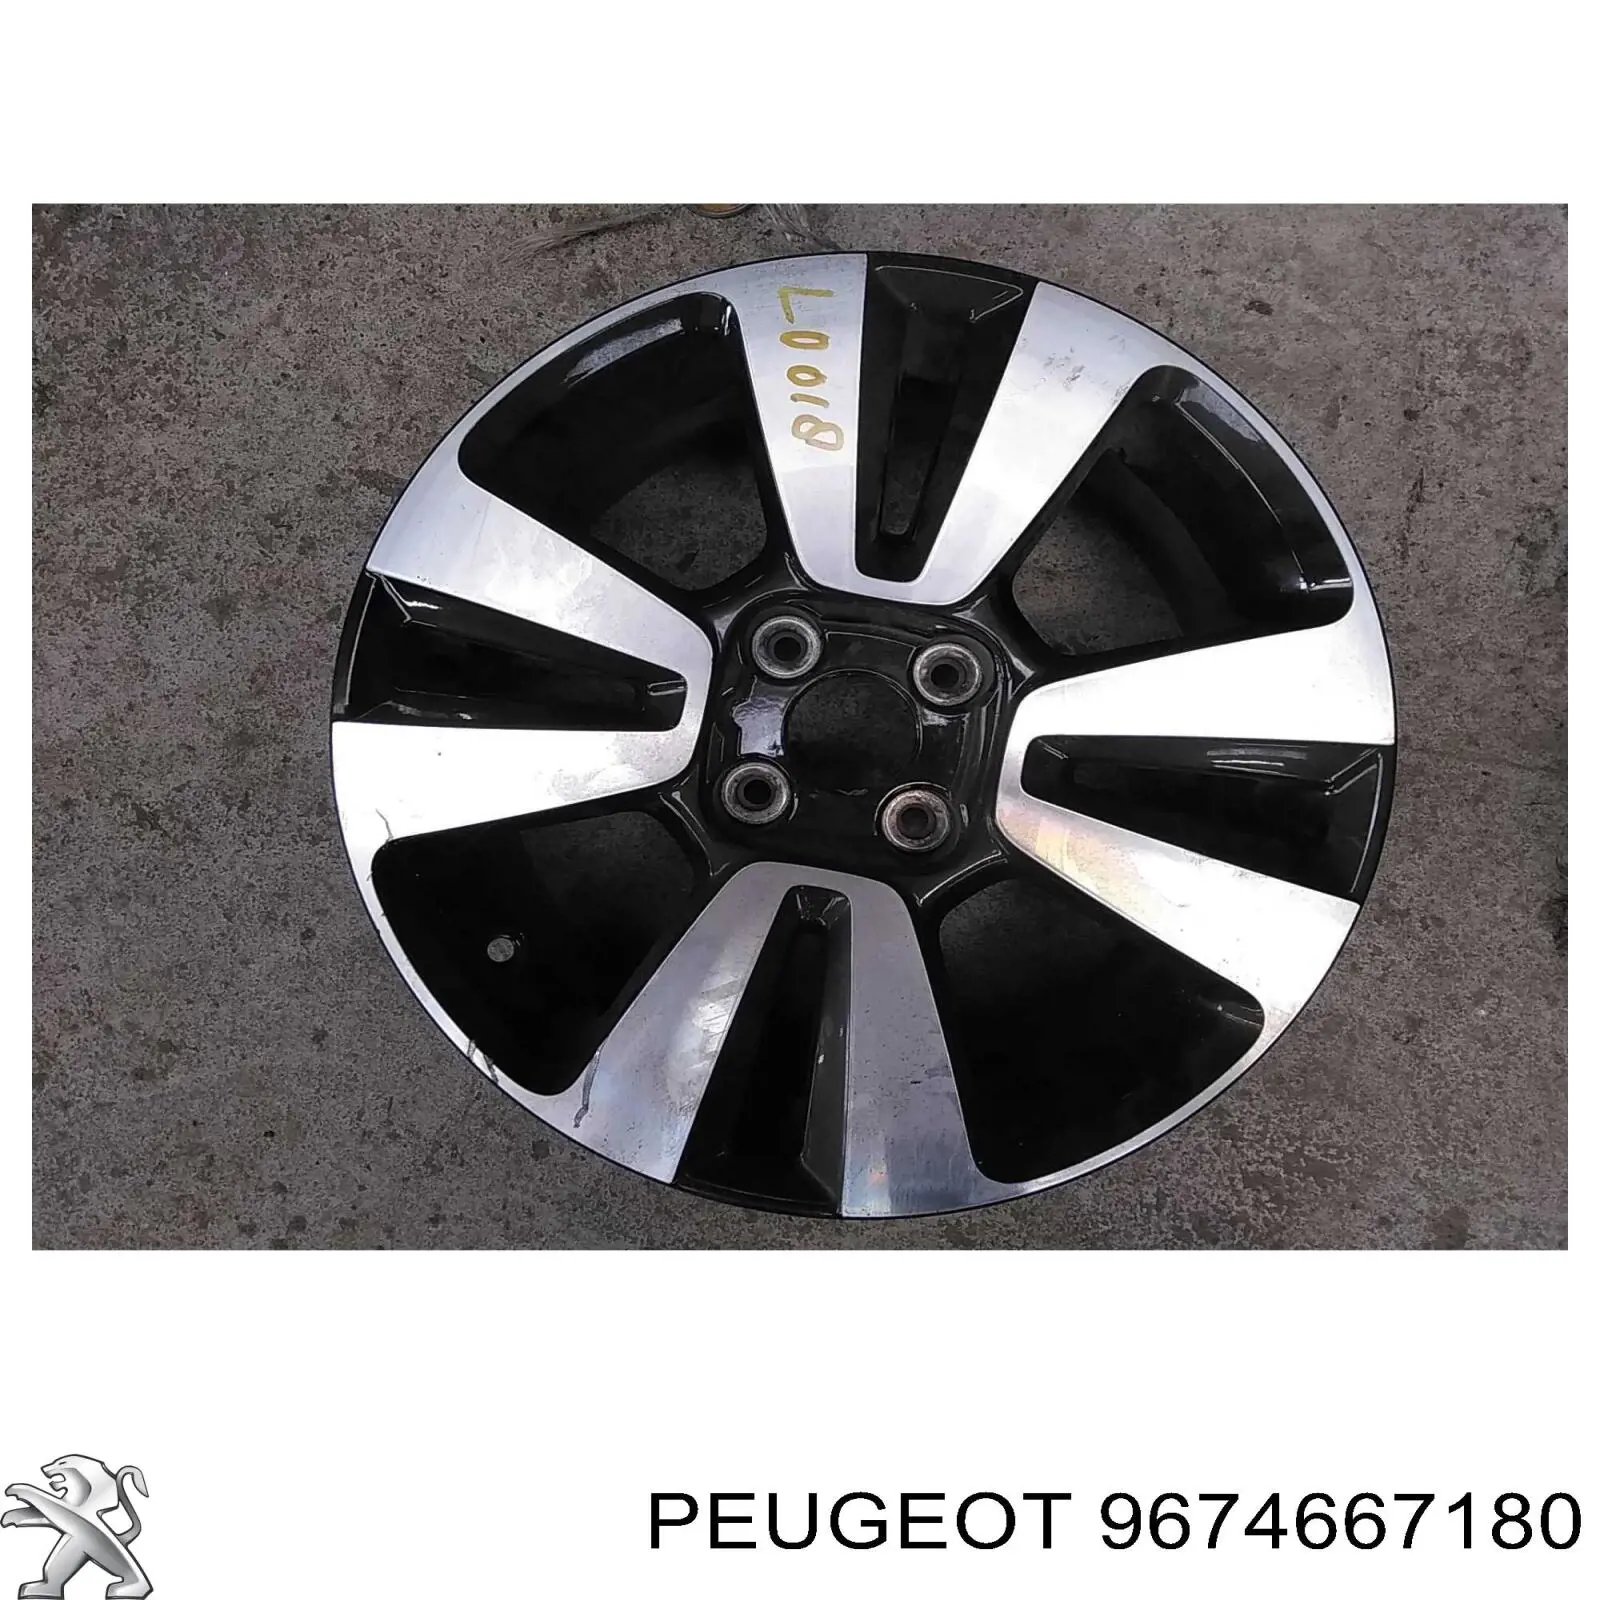 9674667180 Peugeot/Citroen muelle de suspensión eje trasero